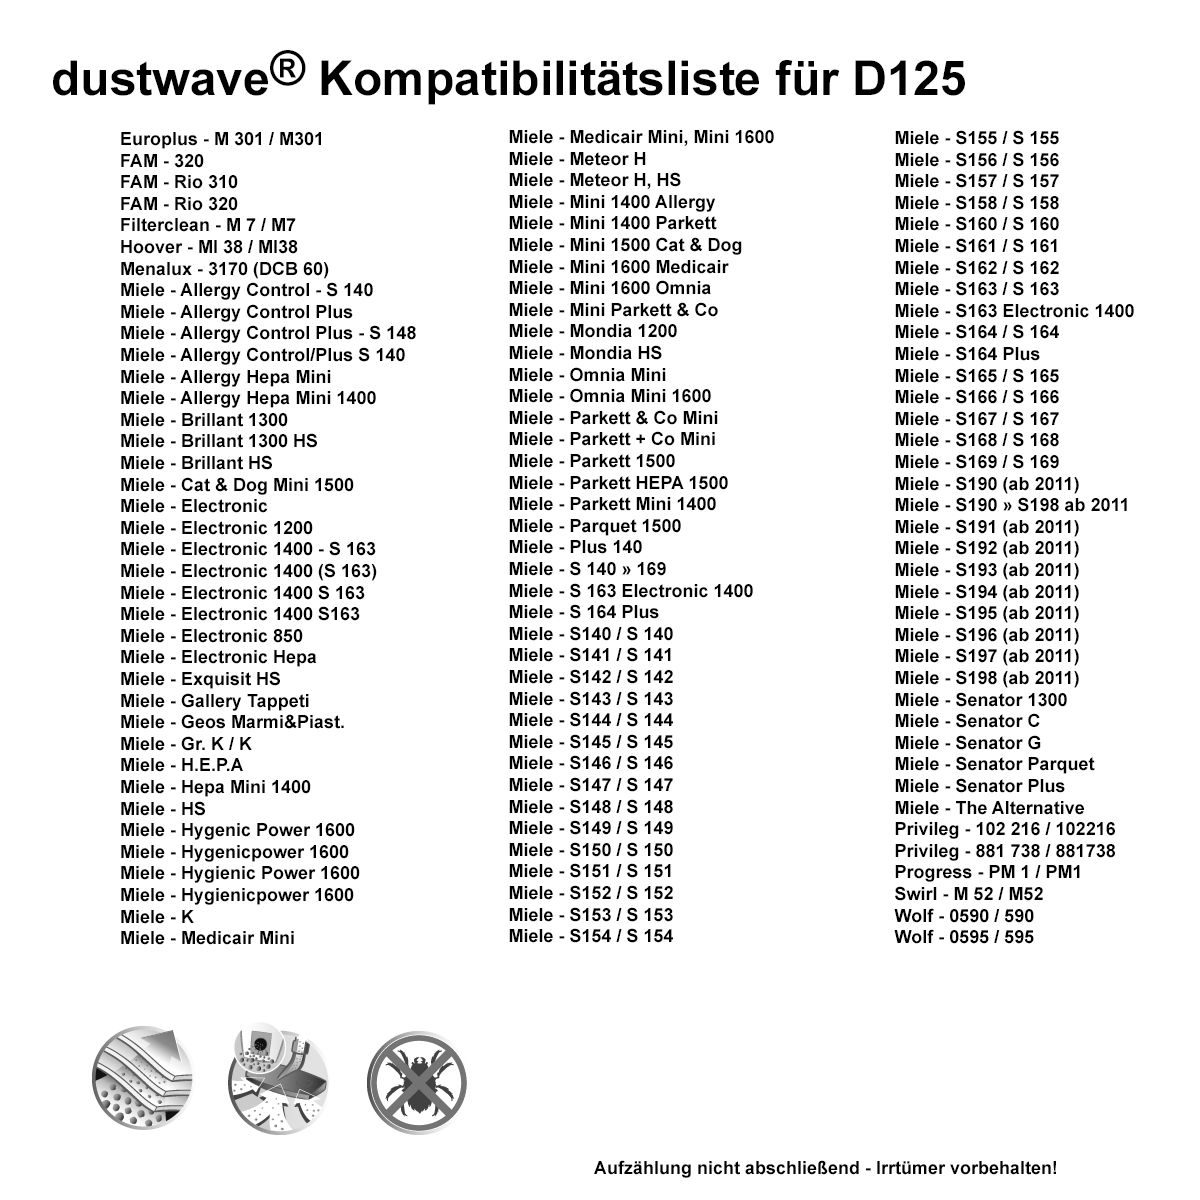 Dustwave® 5 Staubsaugerbeutel für Miele Allergy Control Plus - hocheffizient, mehrlagiges Mikrovlies mit Hygieneverschluss - Made in Germany